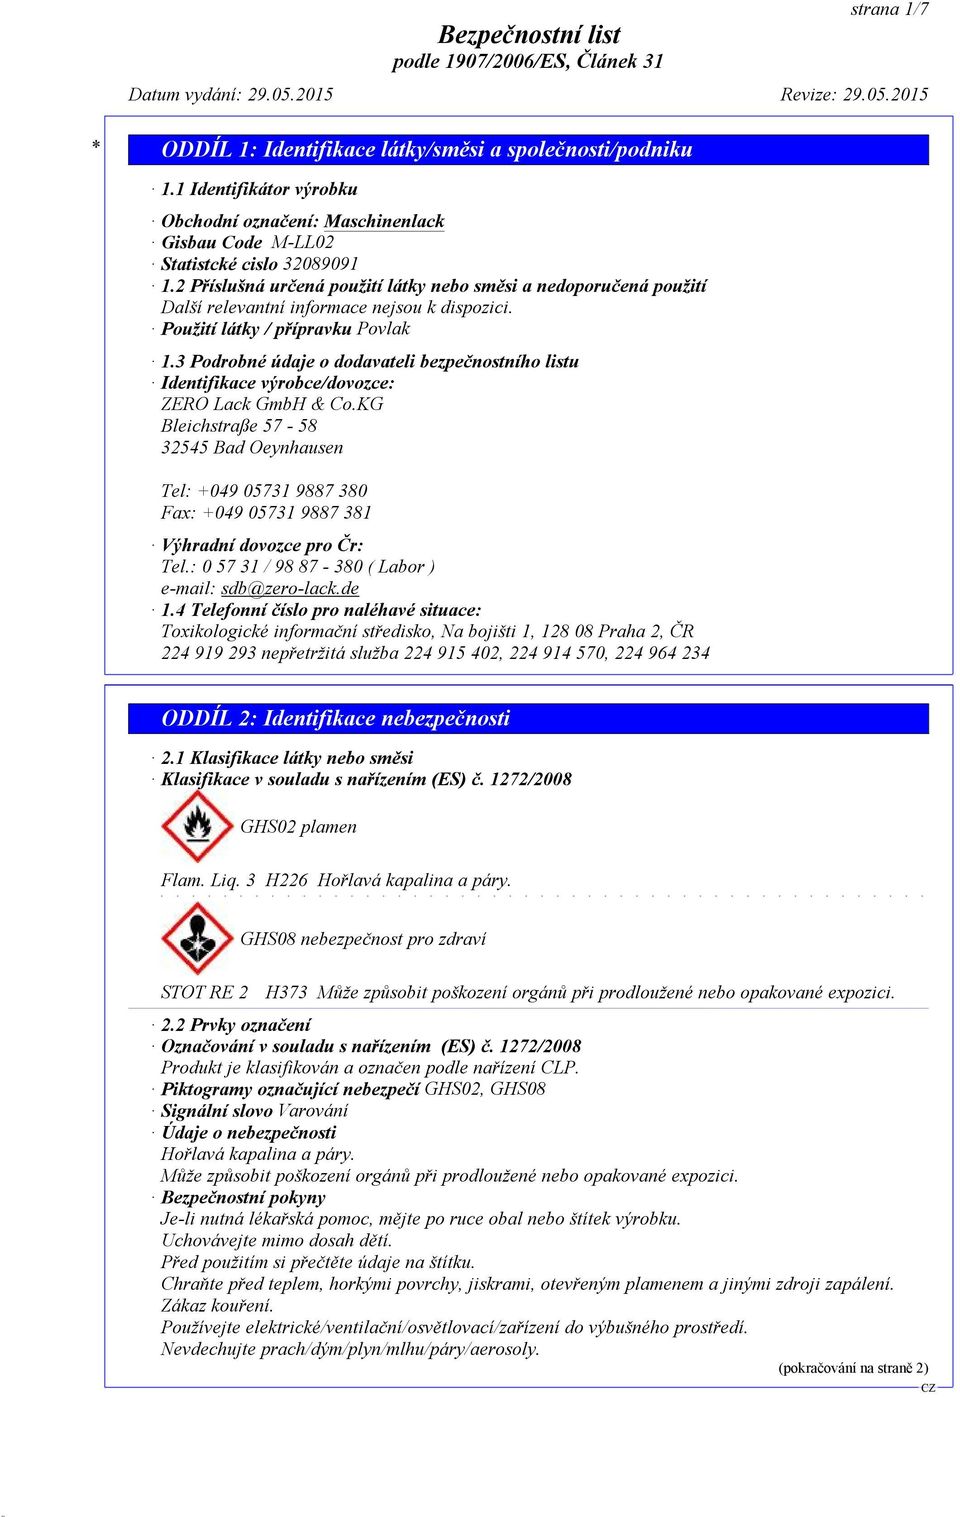 3 Podrobné údaje o dodavateli bezpečnostního listu Identifikace výrobce/dovozce: ZERO Lack GmbH & Co.